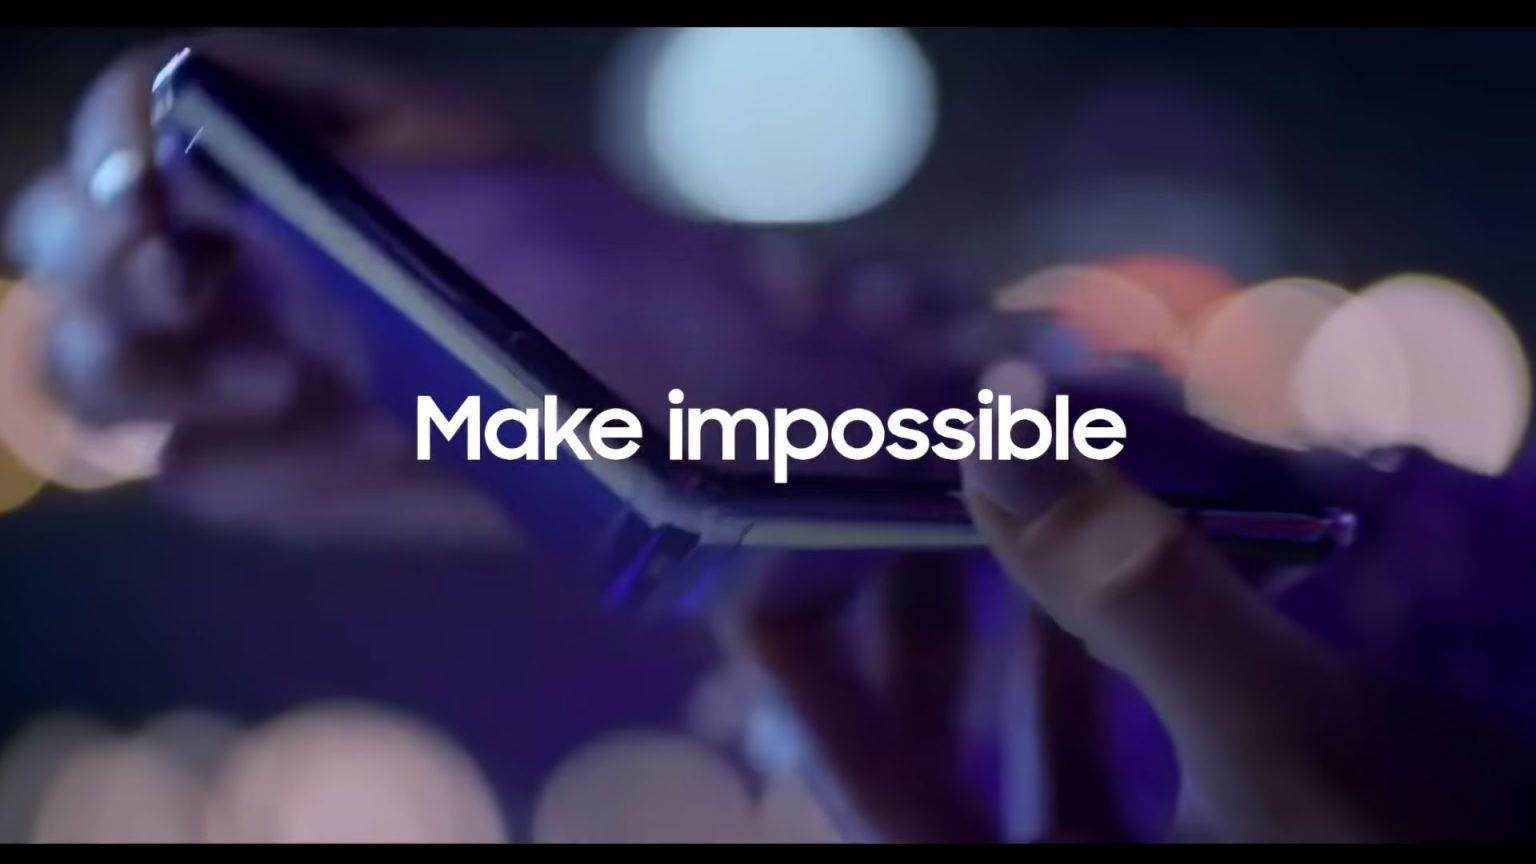 Life Open Up With Galaxy es el nombre del nuevo comercial de Samsung en donde muestran un nuevo y misterioso Galaxy plegable.